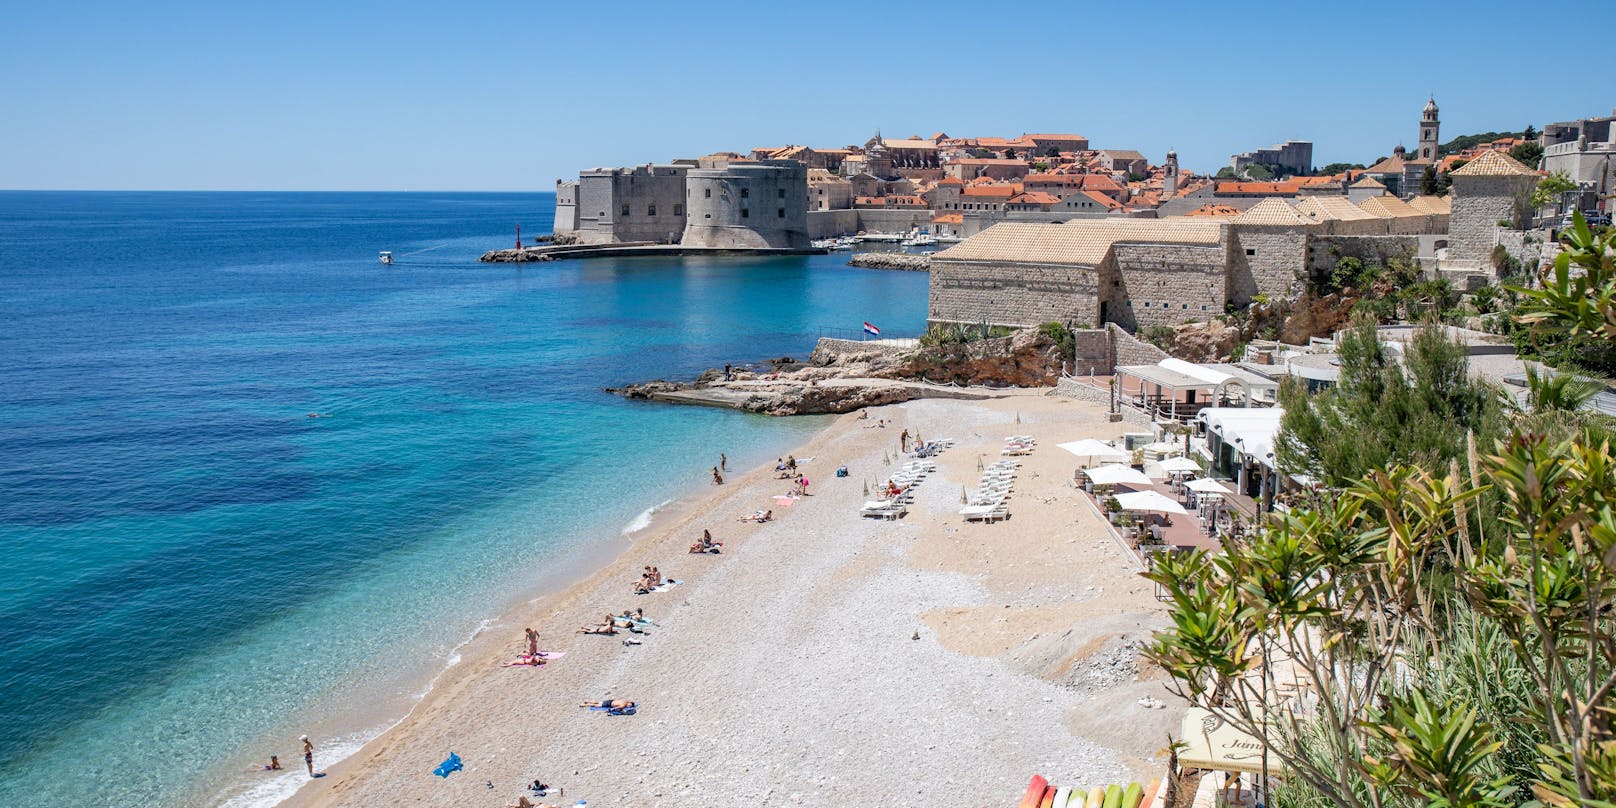 Im Bild: Dubrovnik, ein beliebtes Urlaubsziel vieler.&nbsp;